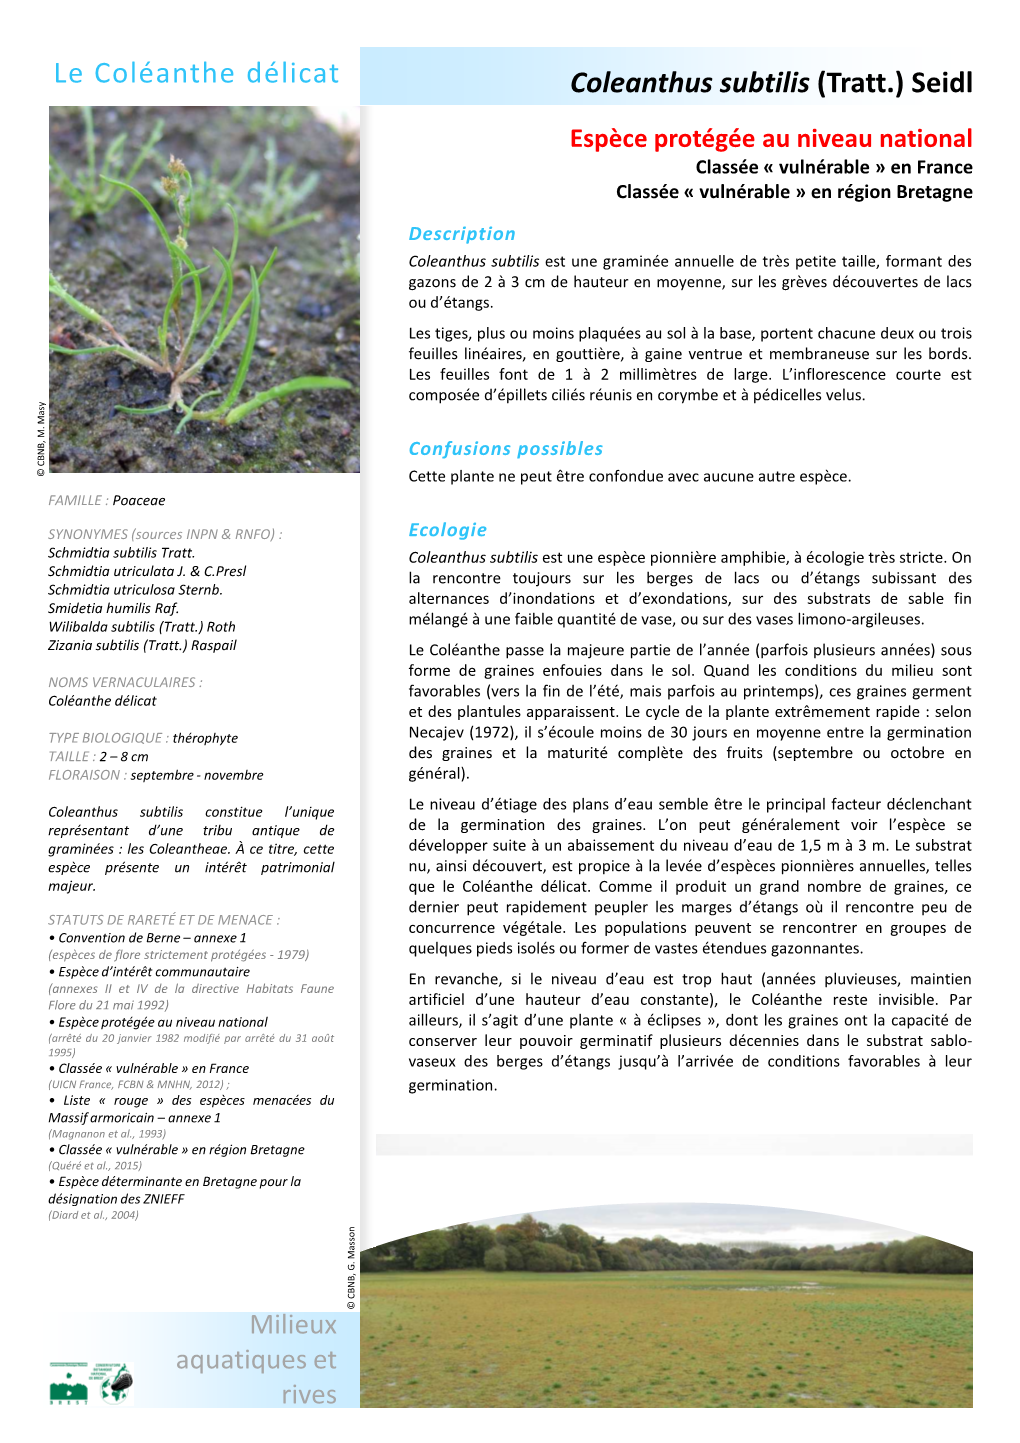 Coleanthus Subtilis (Tratt.) Seidl Le Coléanthe Délicat